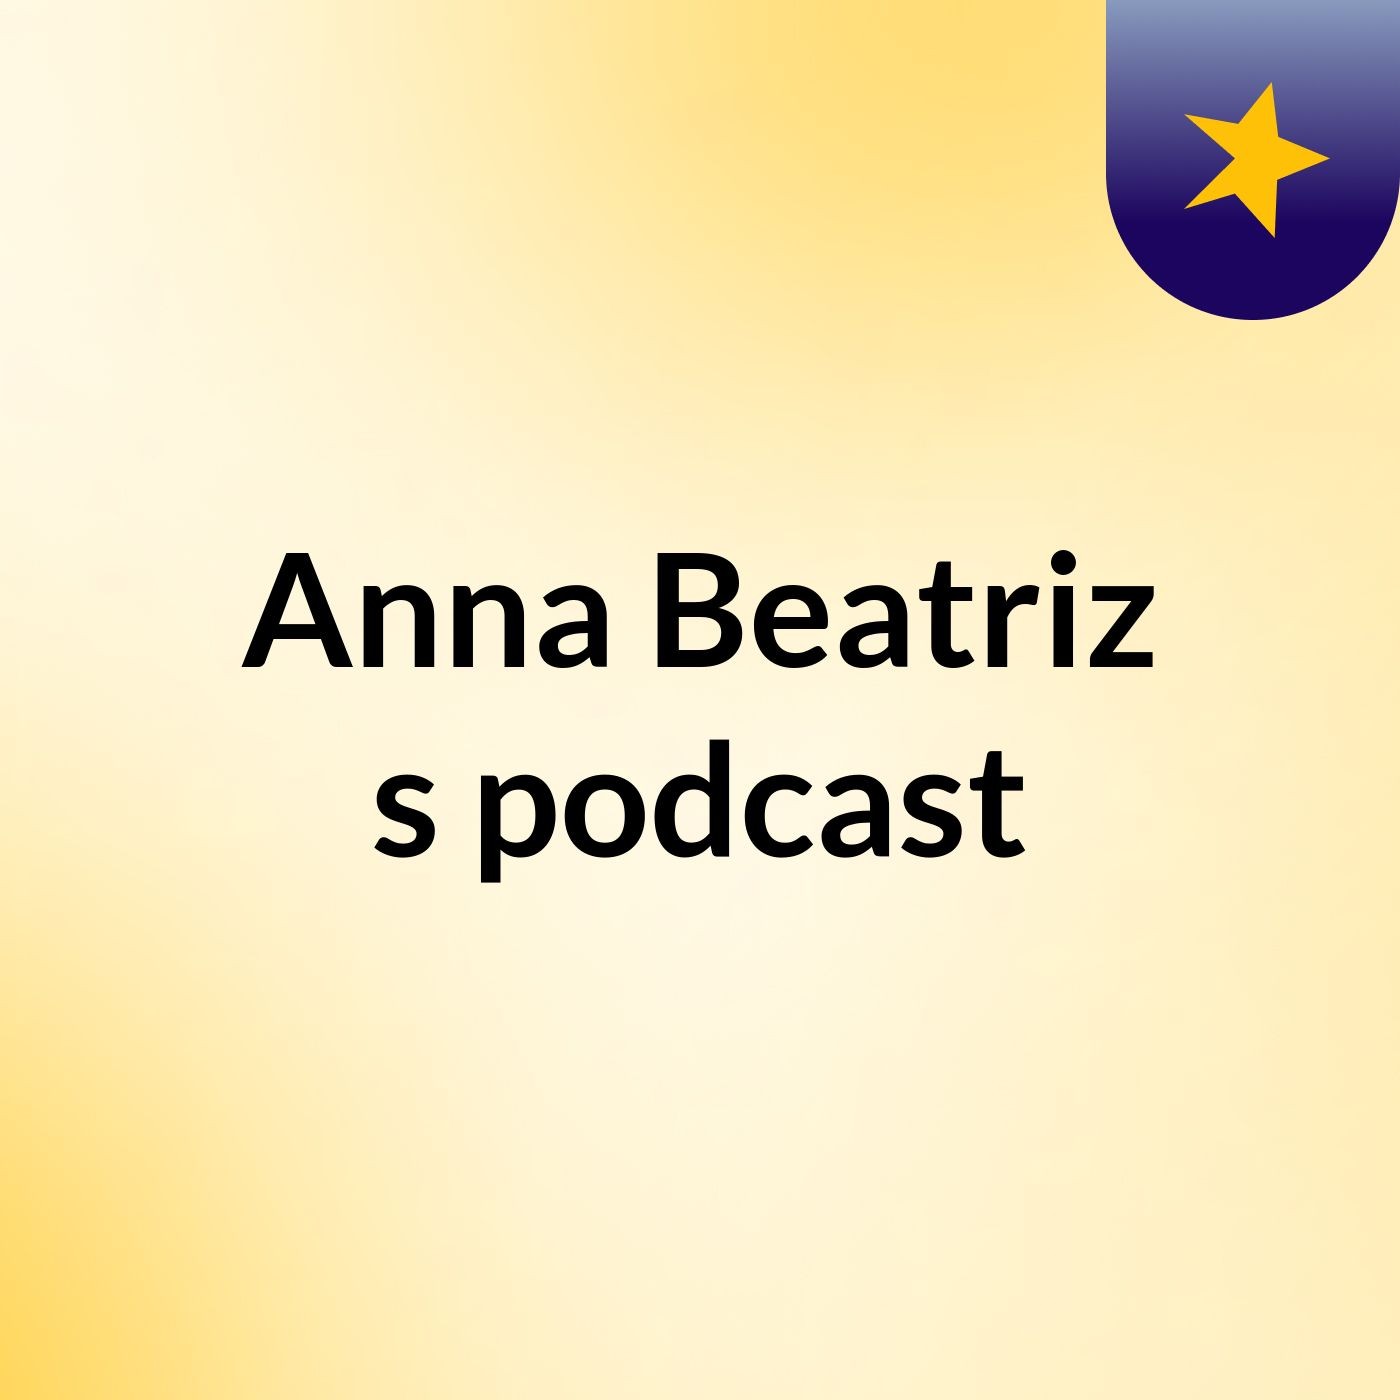 Anna Beatriz's podcast